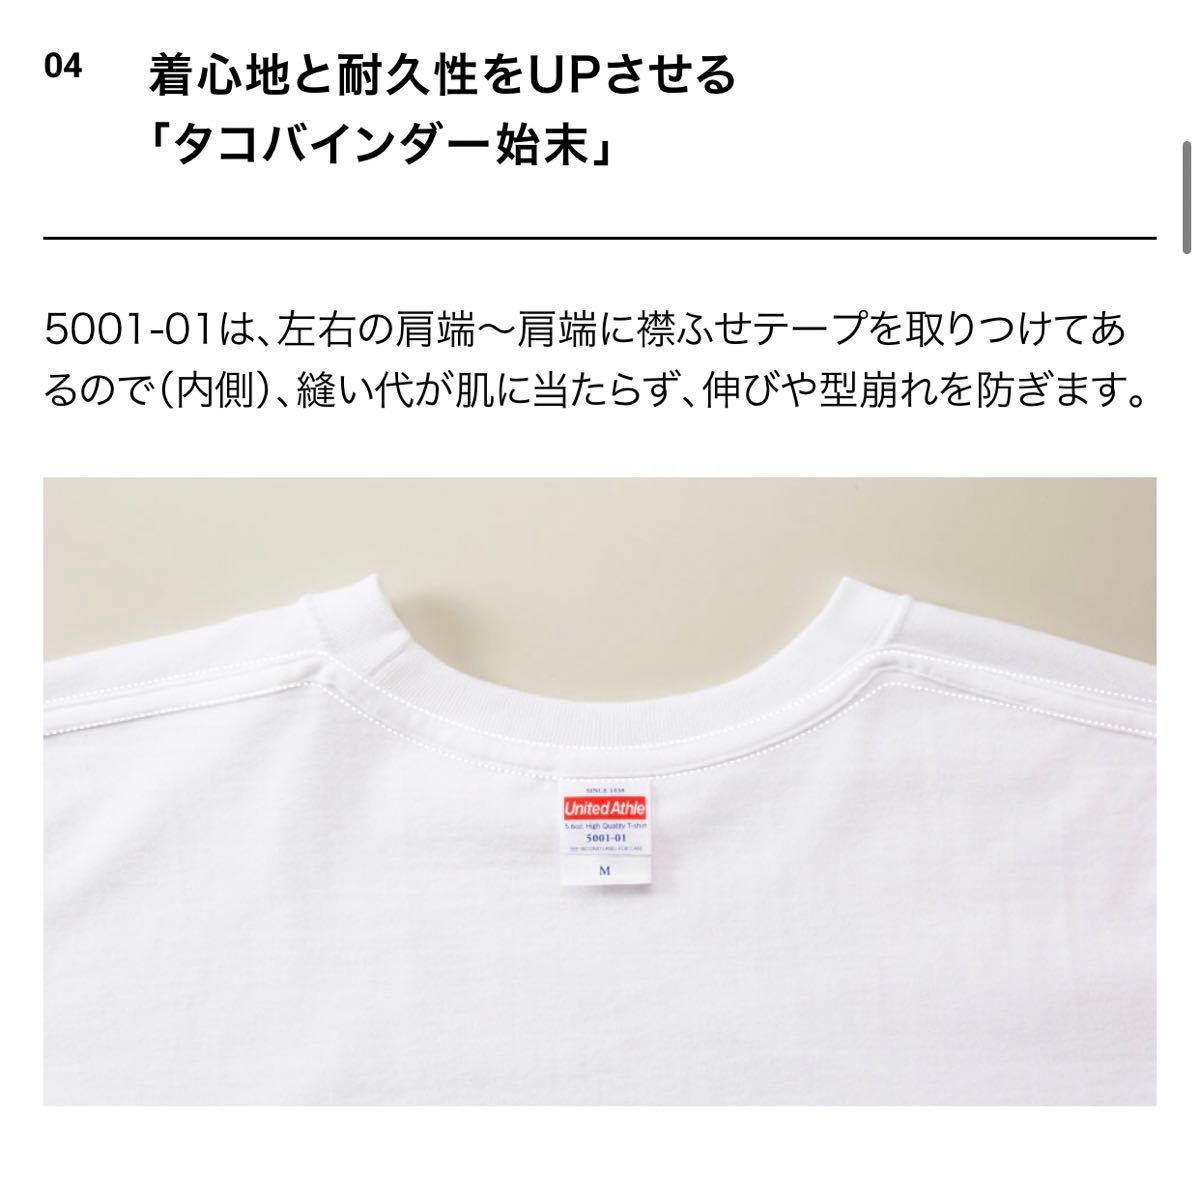 Tシャツ 半袖 5.6オンス ハイクオリティー【5001-01】XL ダークチョコレート 綿100%